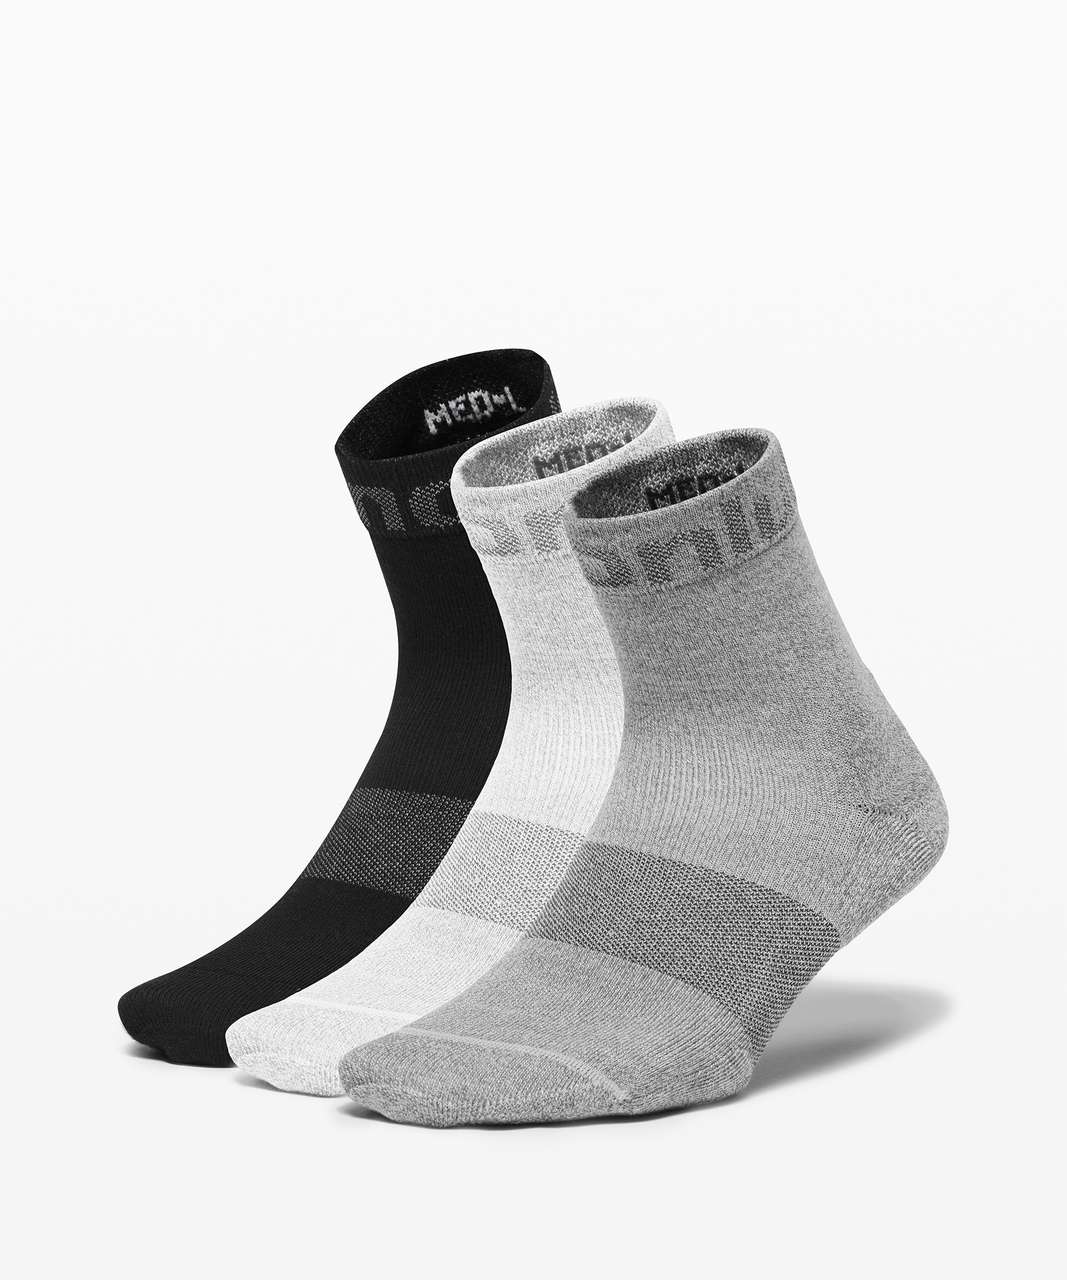 Lululemon Daily Stride Mid Crew Sock *3 Pack - Black / White / Vapor